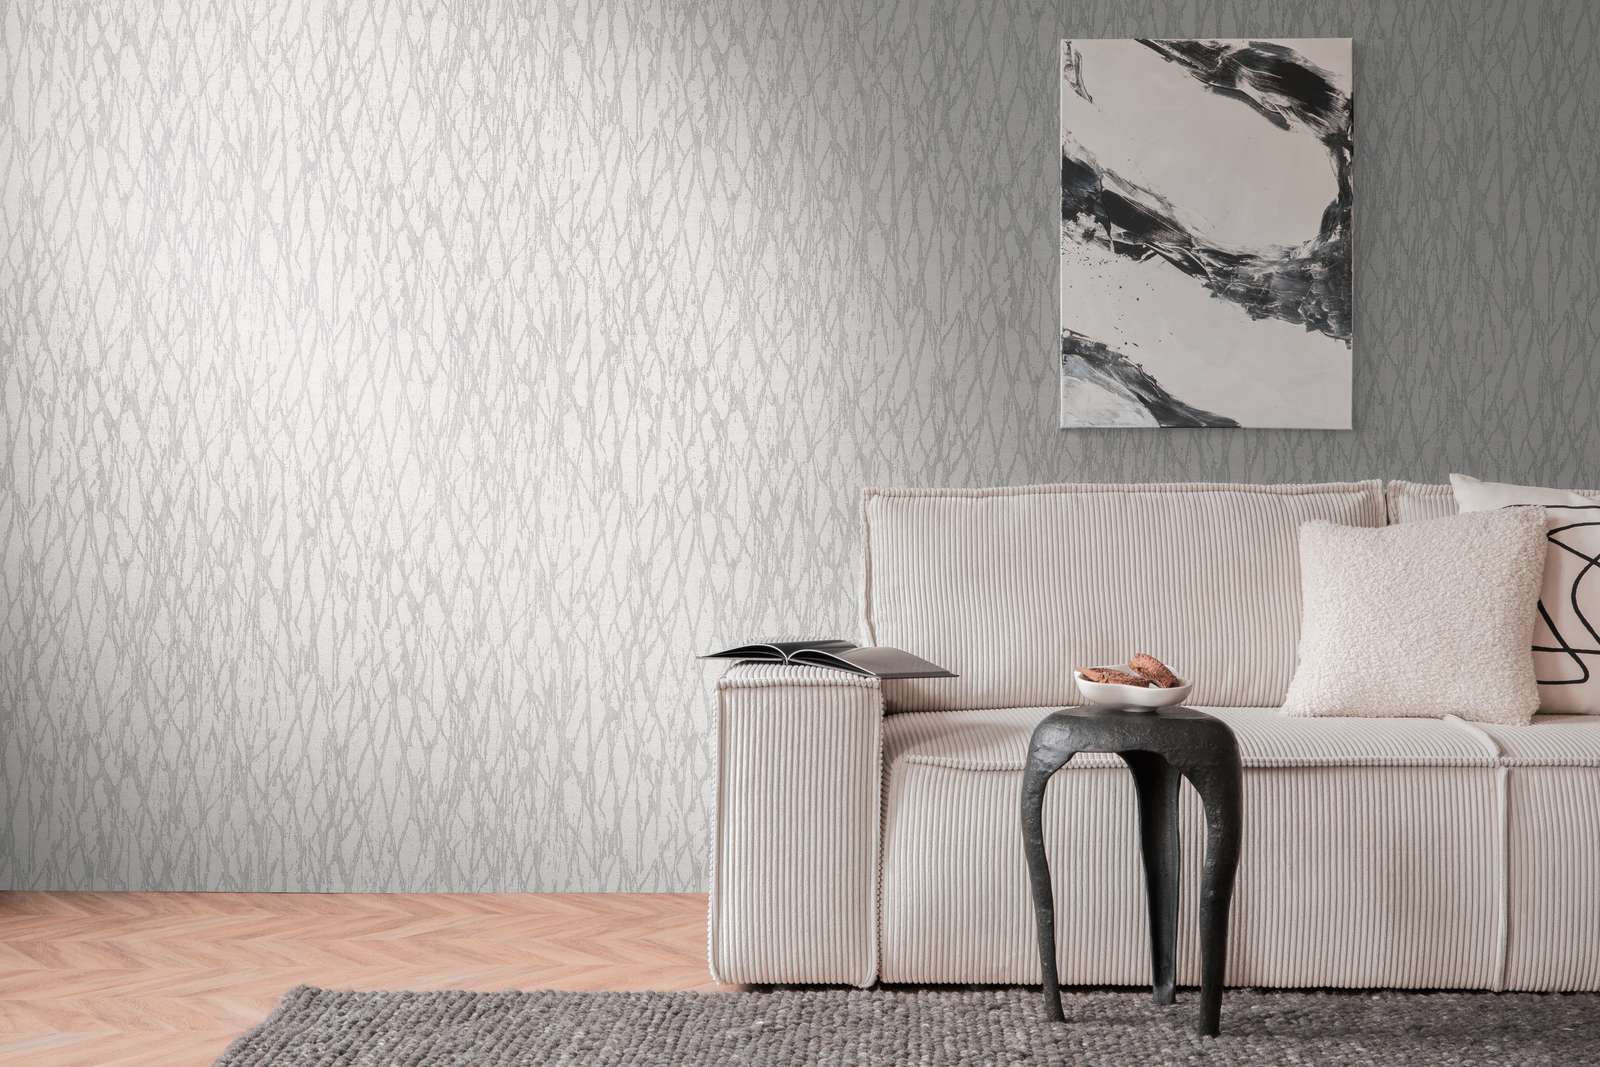             Vliesbehang met abstract lijnenpatroon licht glanzend - wit, grijs, zilver
        